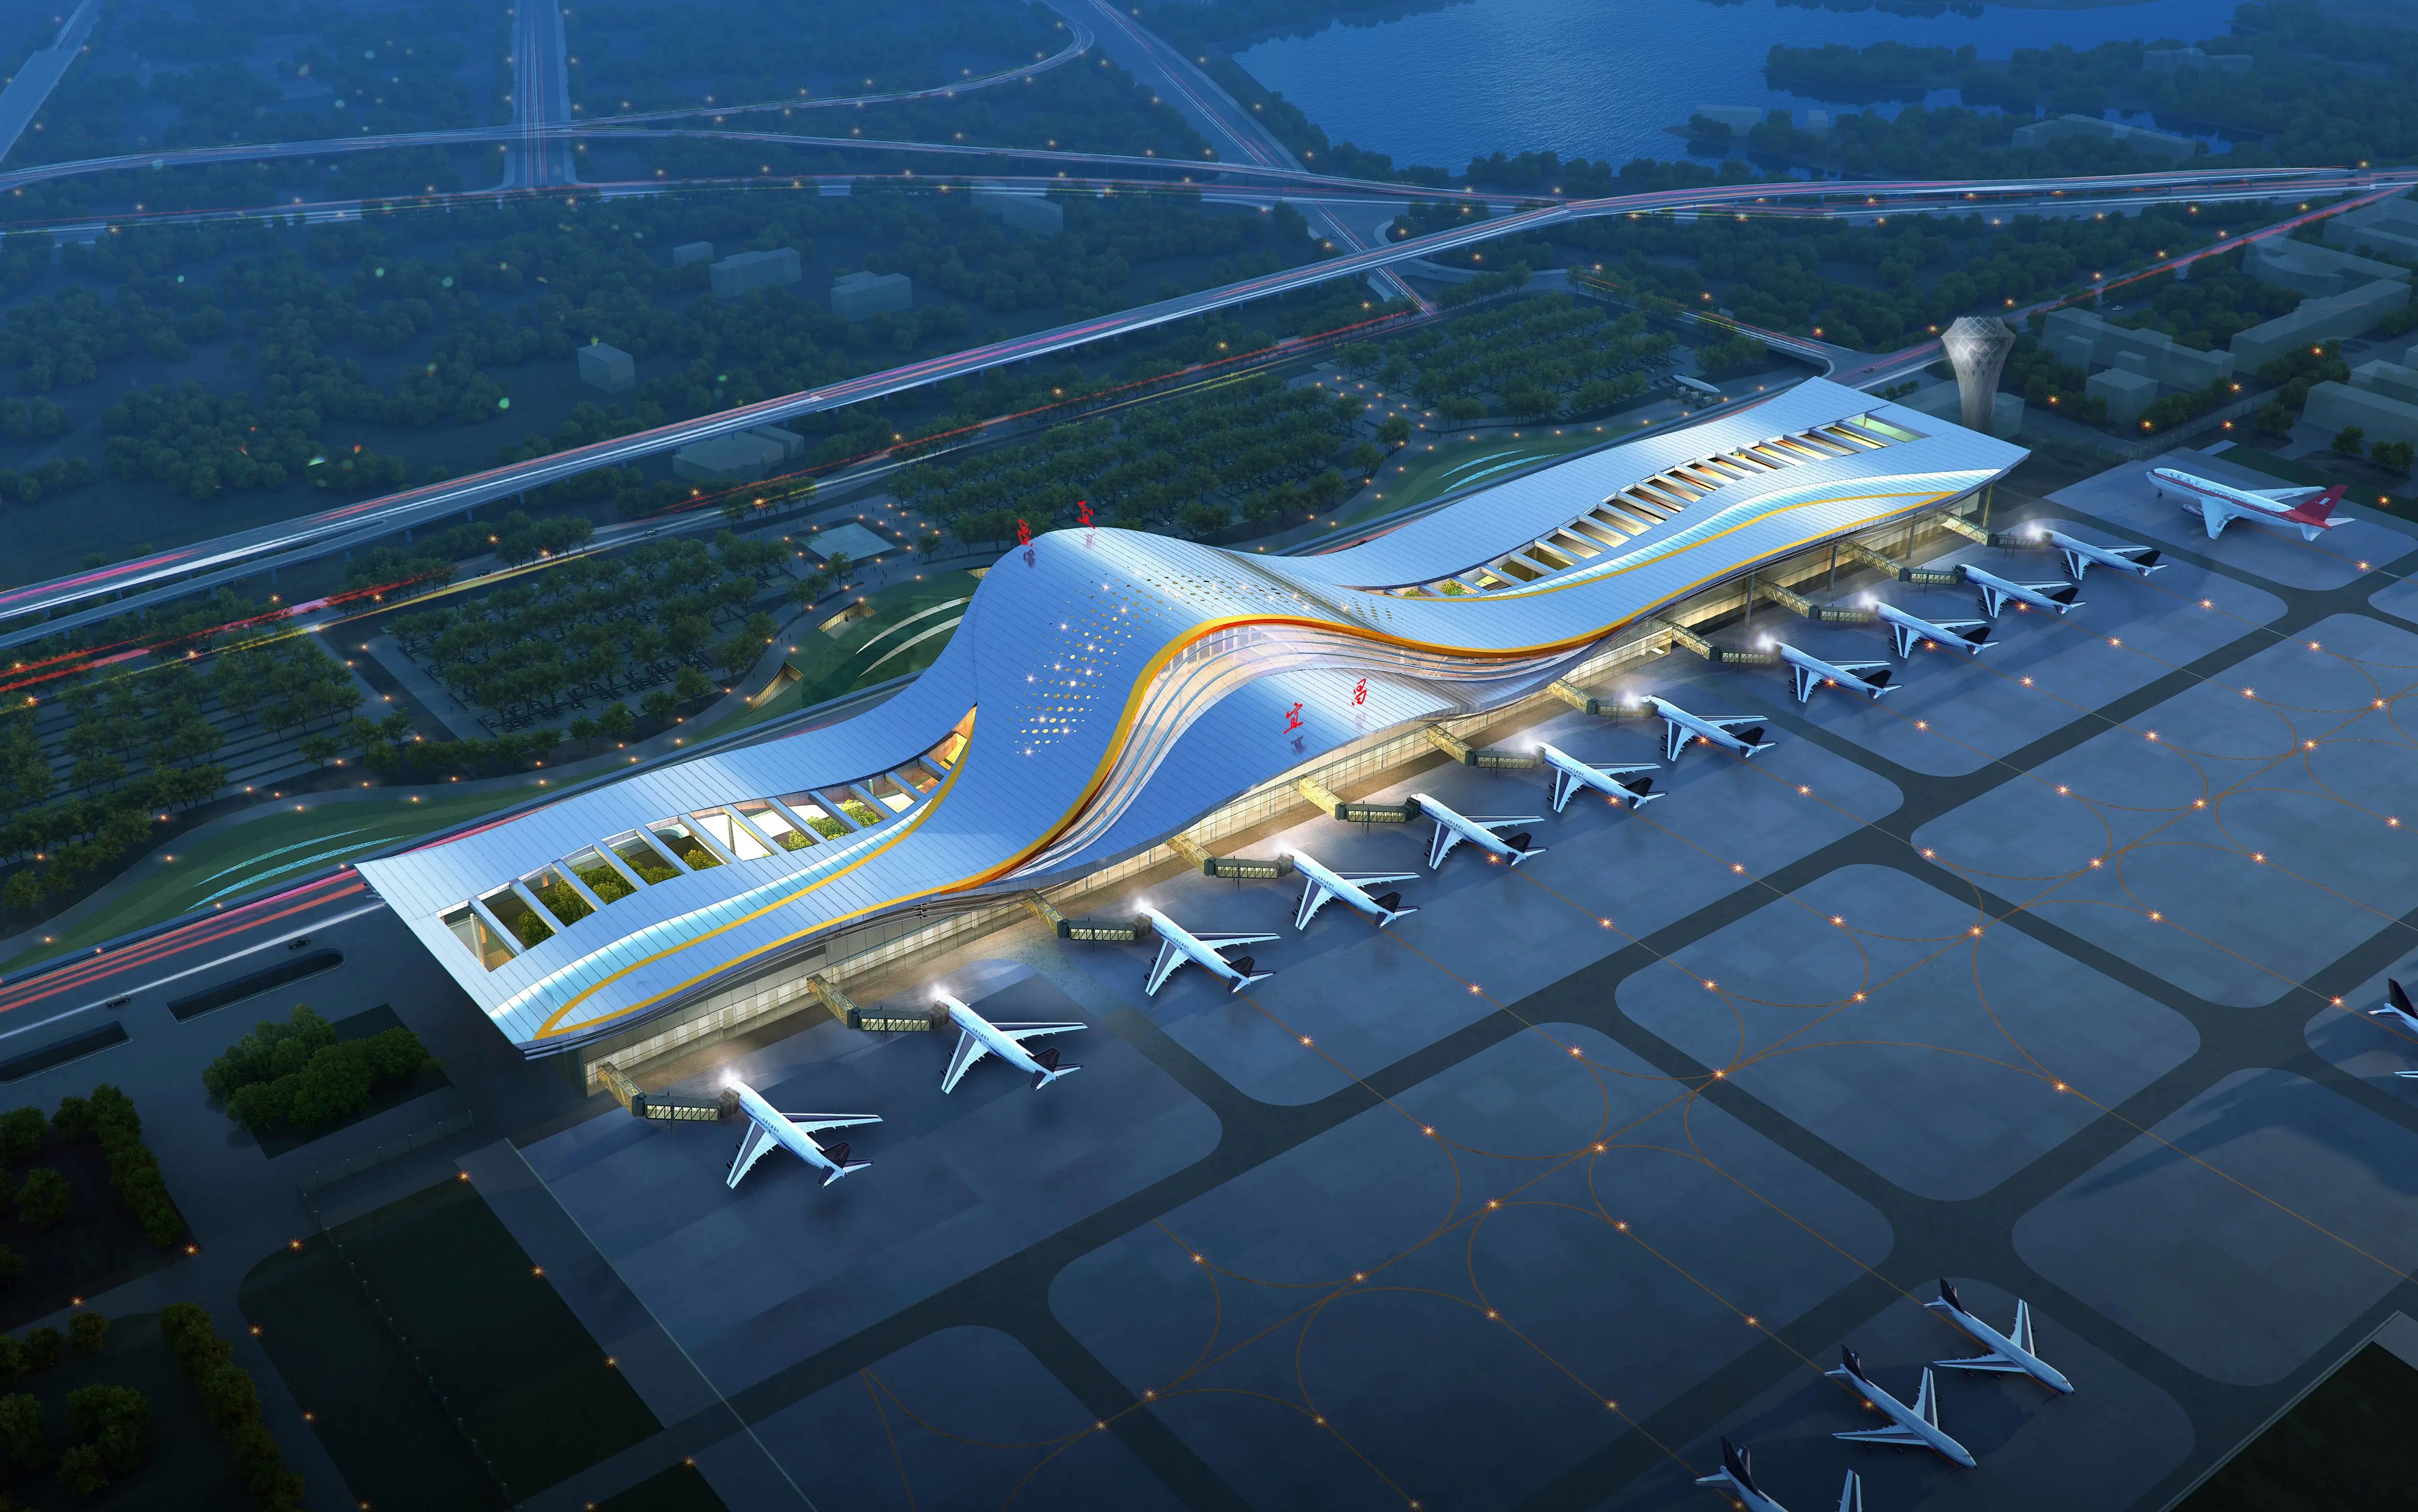 宜昌三峡机场t3航站楼图片